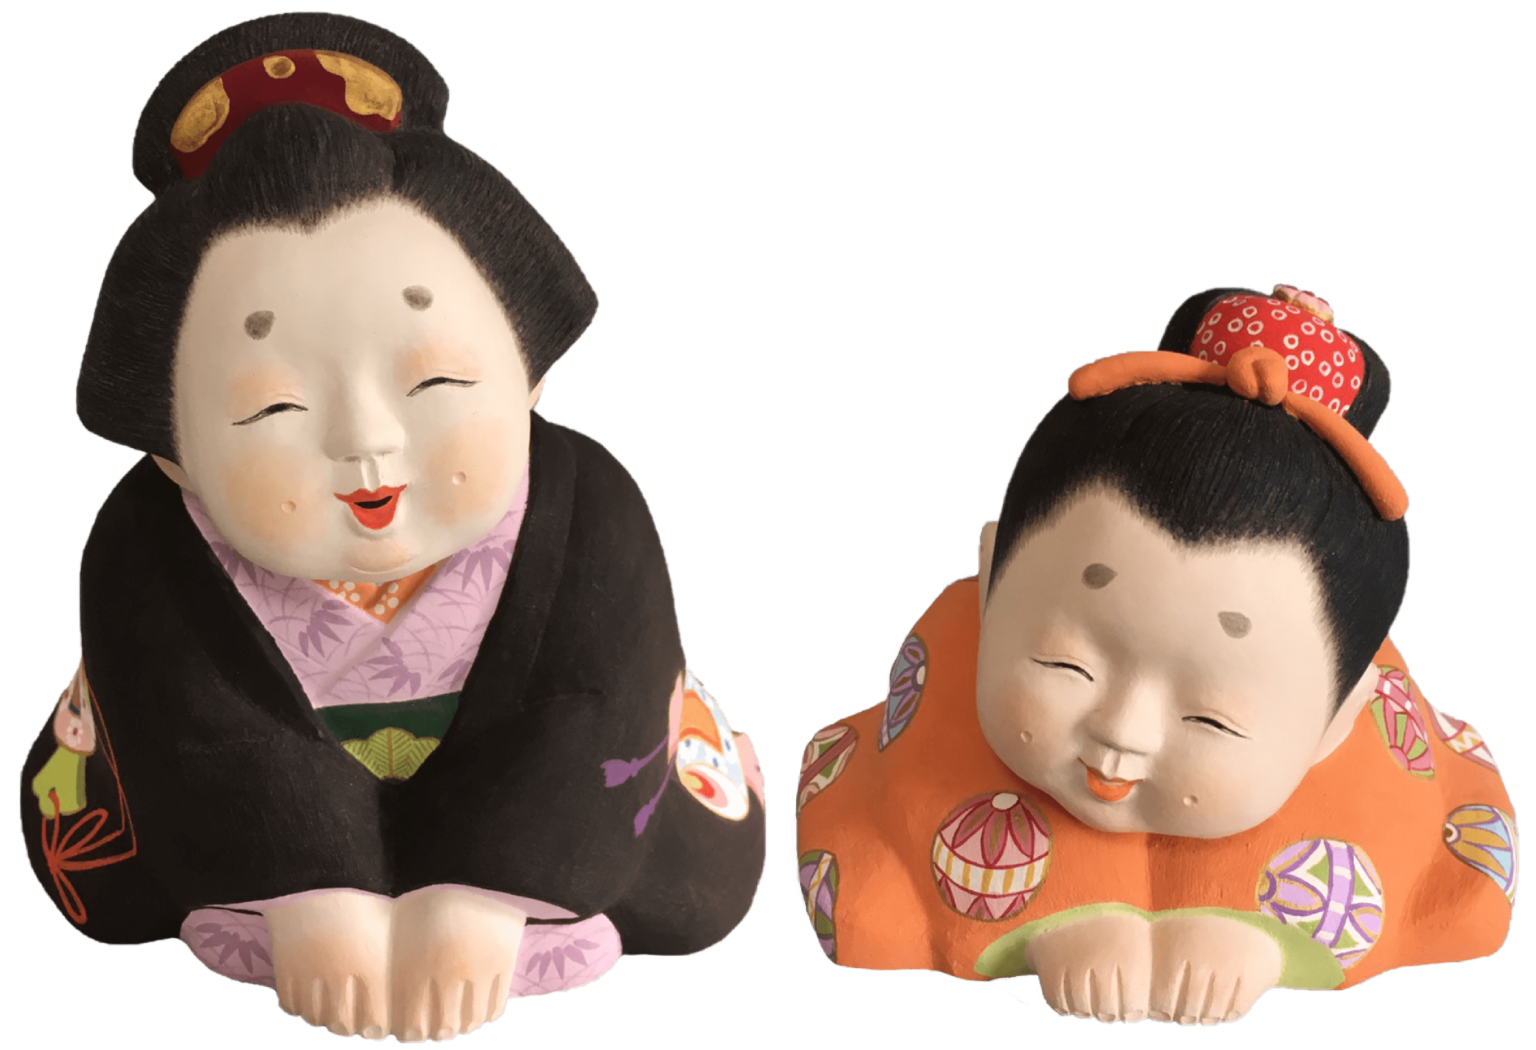 土人形しろ – 京都で作り続ける土人形作家、城 啓子・良明のホームページです。